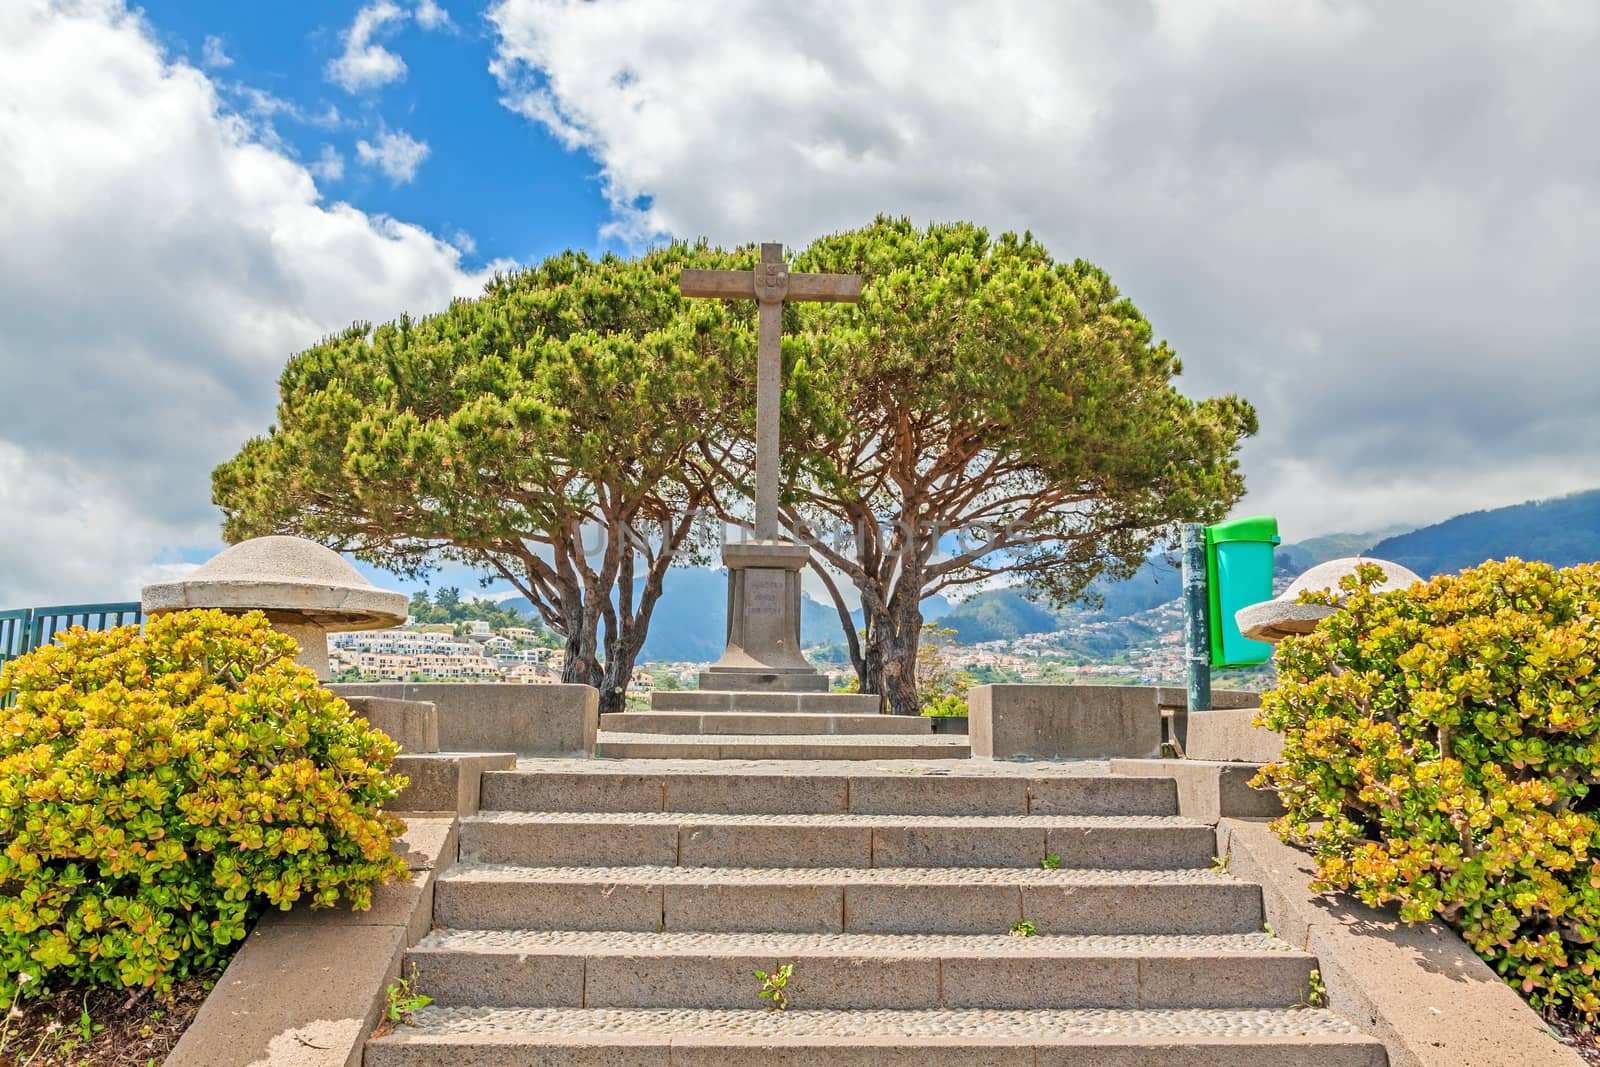 Miradouro Pico dos Barcelos, Funchal, Madeira by aldorado